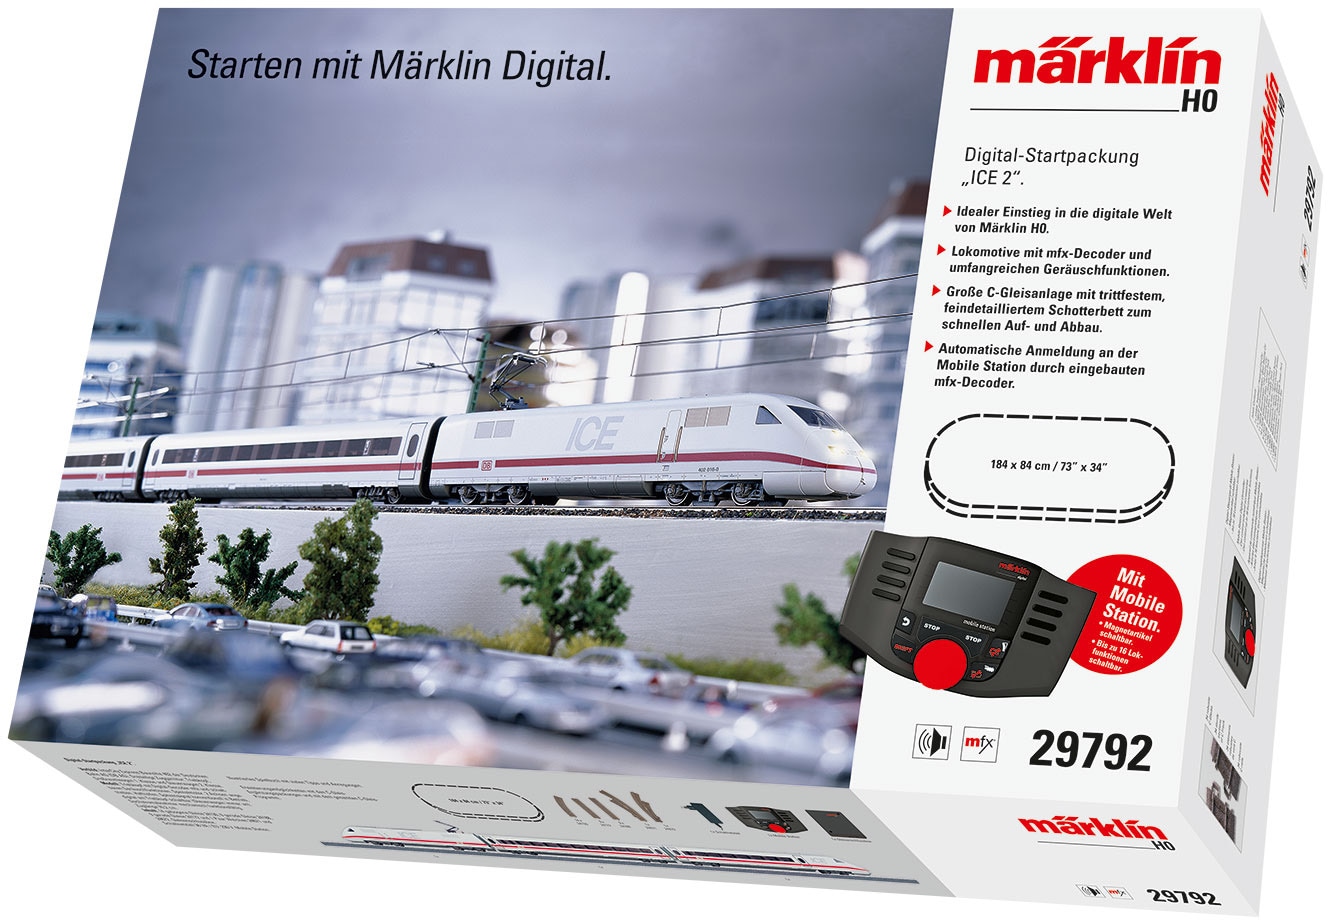 Modelleisenbahn-Set »Märklin Digital - Startpackung ICE 2, Wechselstrom - 29792«